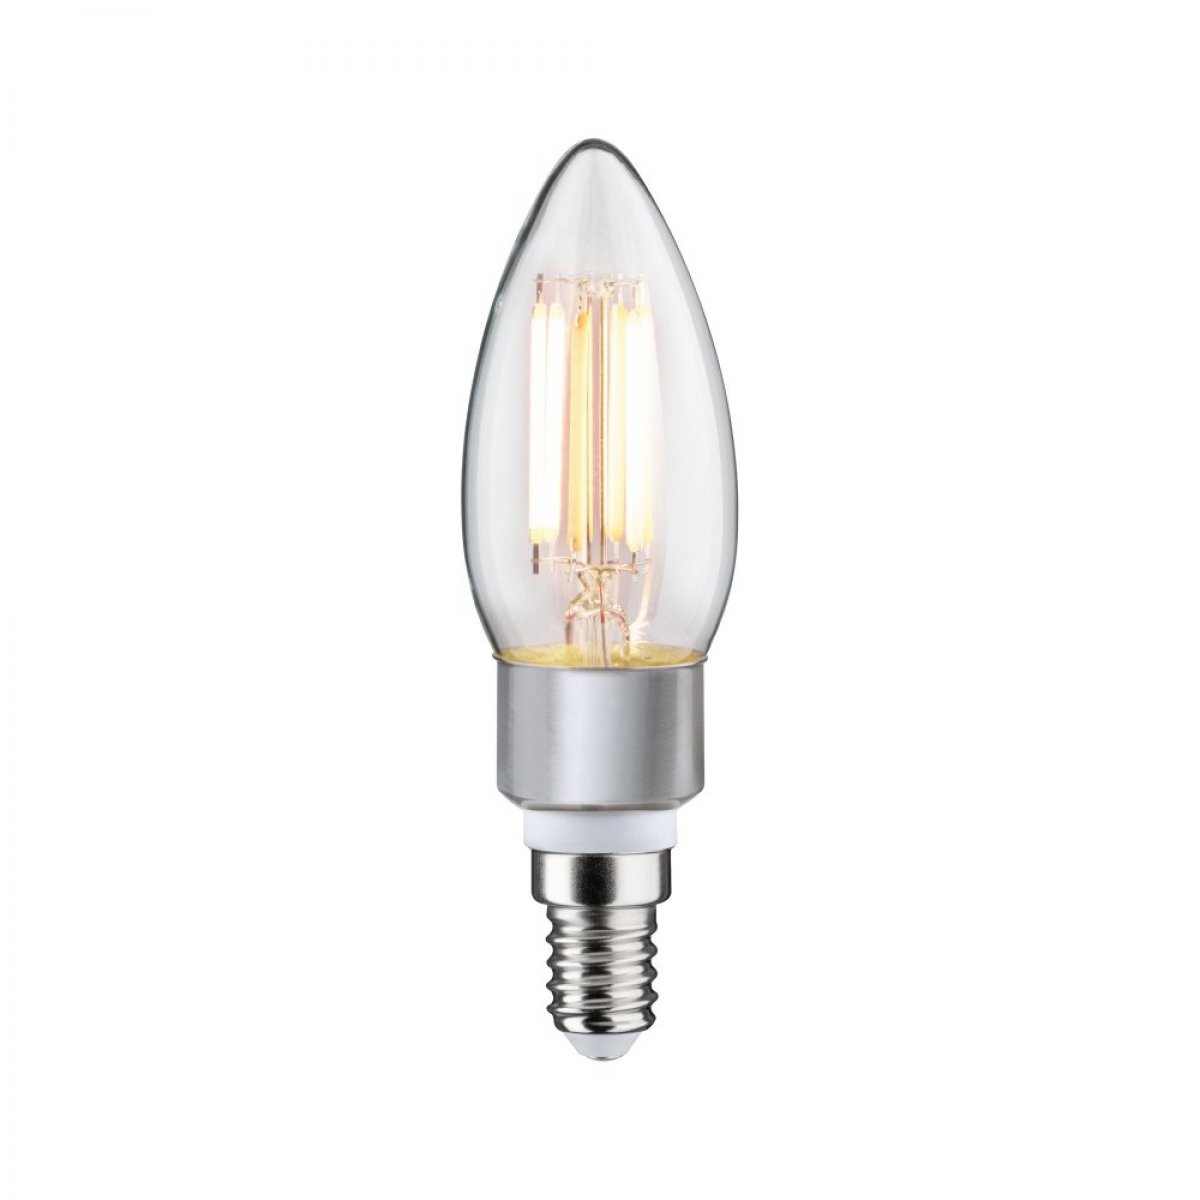 LICHT 470 Watt Leuchtmittel Fil Goldlicht/Warmweiß Kerze 5 lm E14 LED PAULMANN